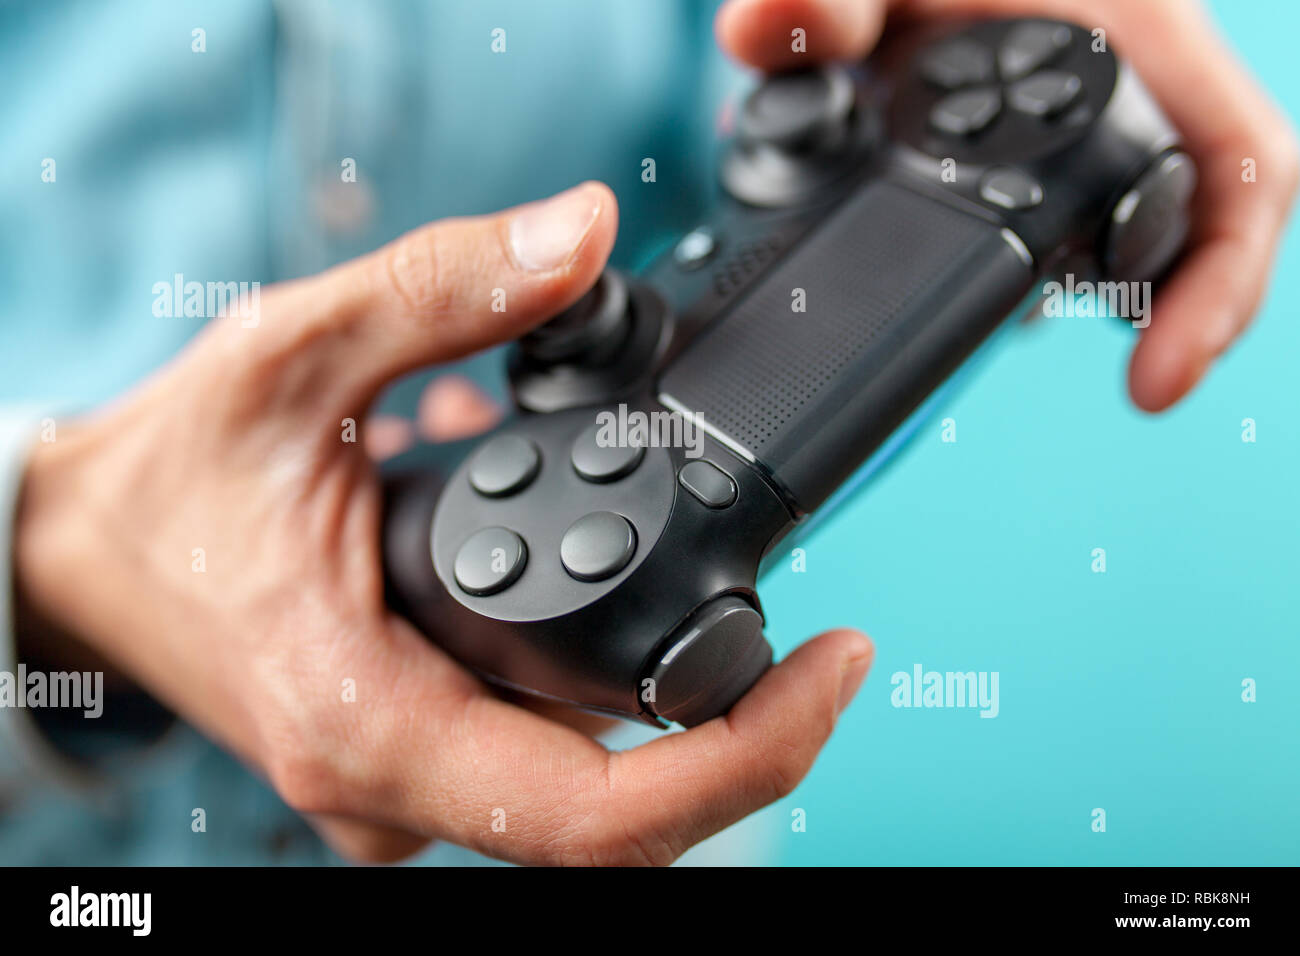 Macho manos sosteniendo un controlador para juegos Foto de stock